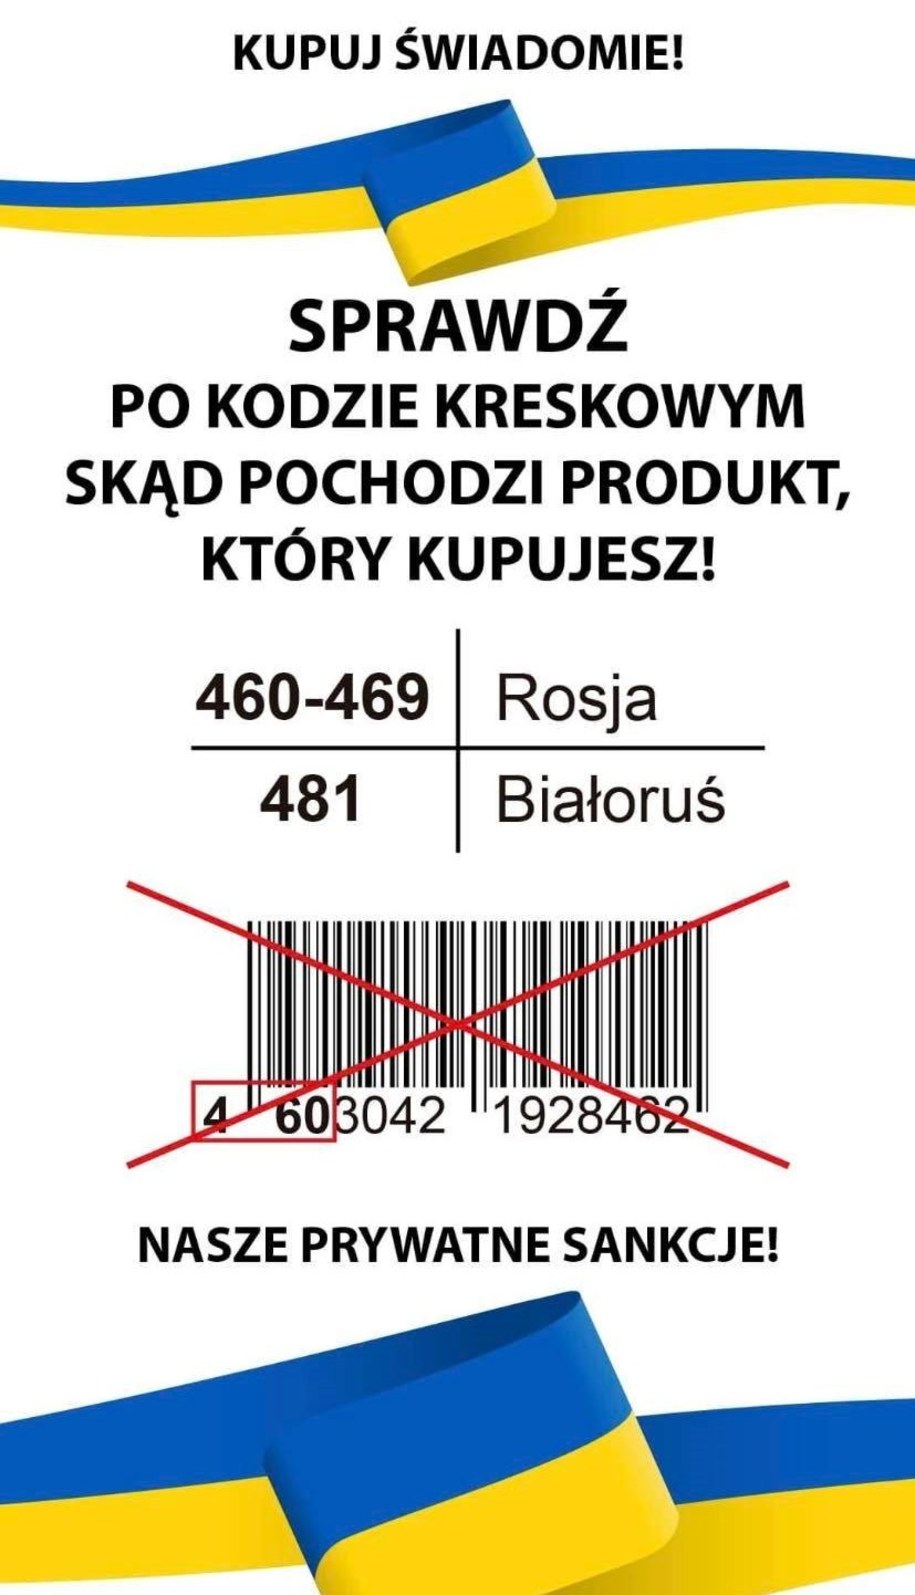 Produkty z Rosji i Białorusi